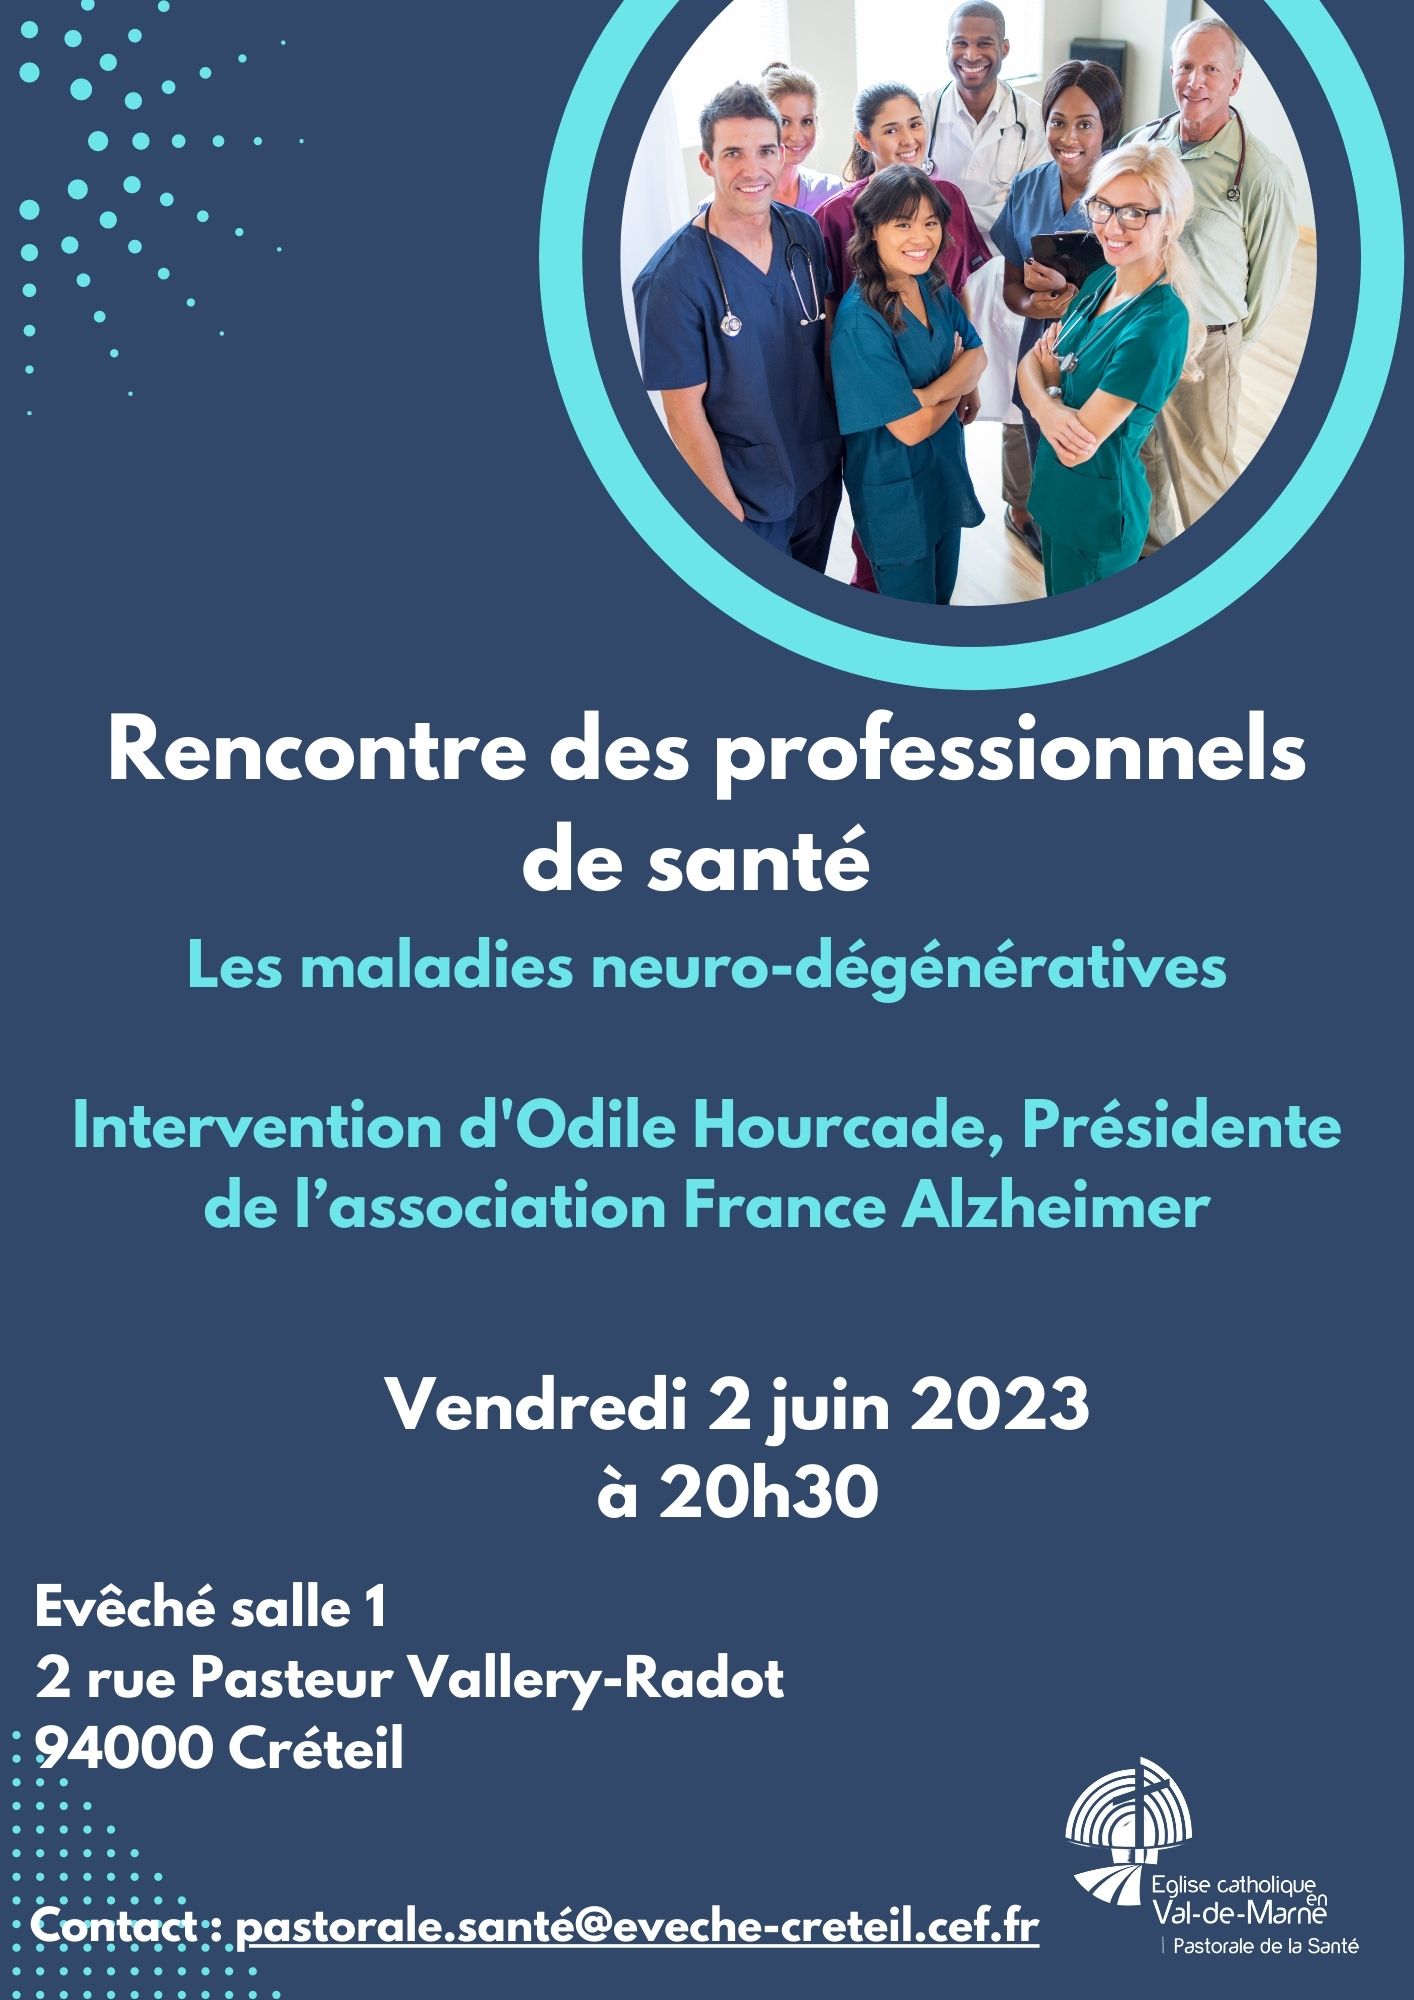 Rencontre des professionnesl de santé 2 juin 2023 (2)